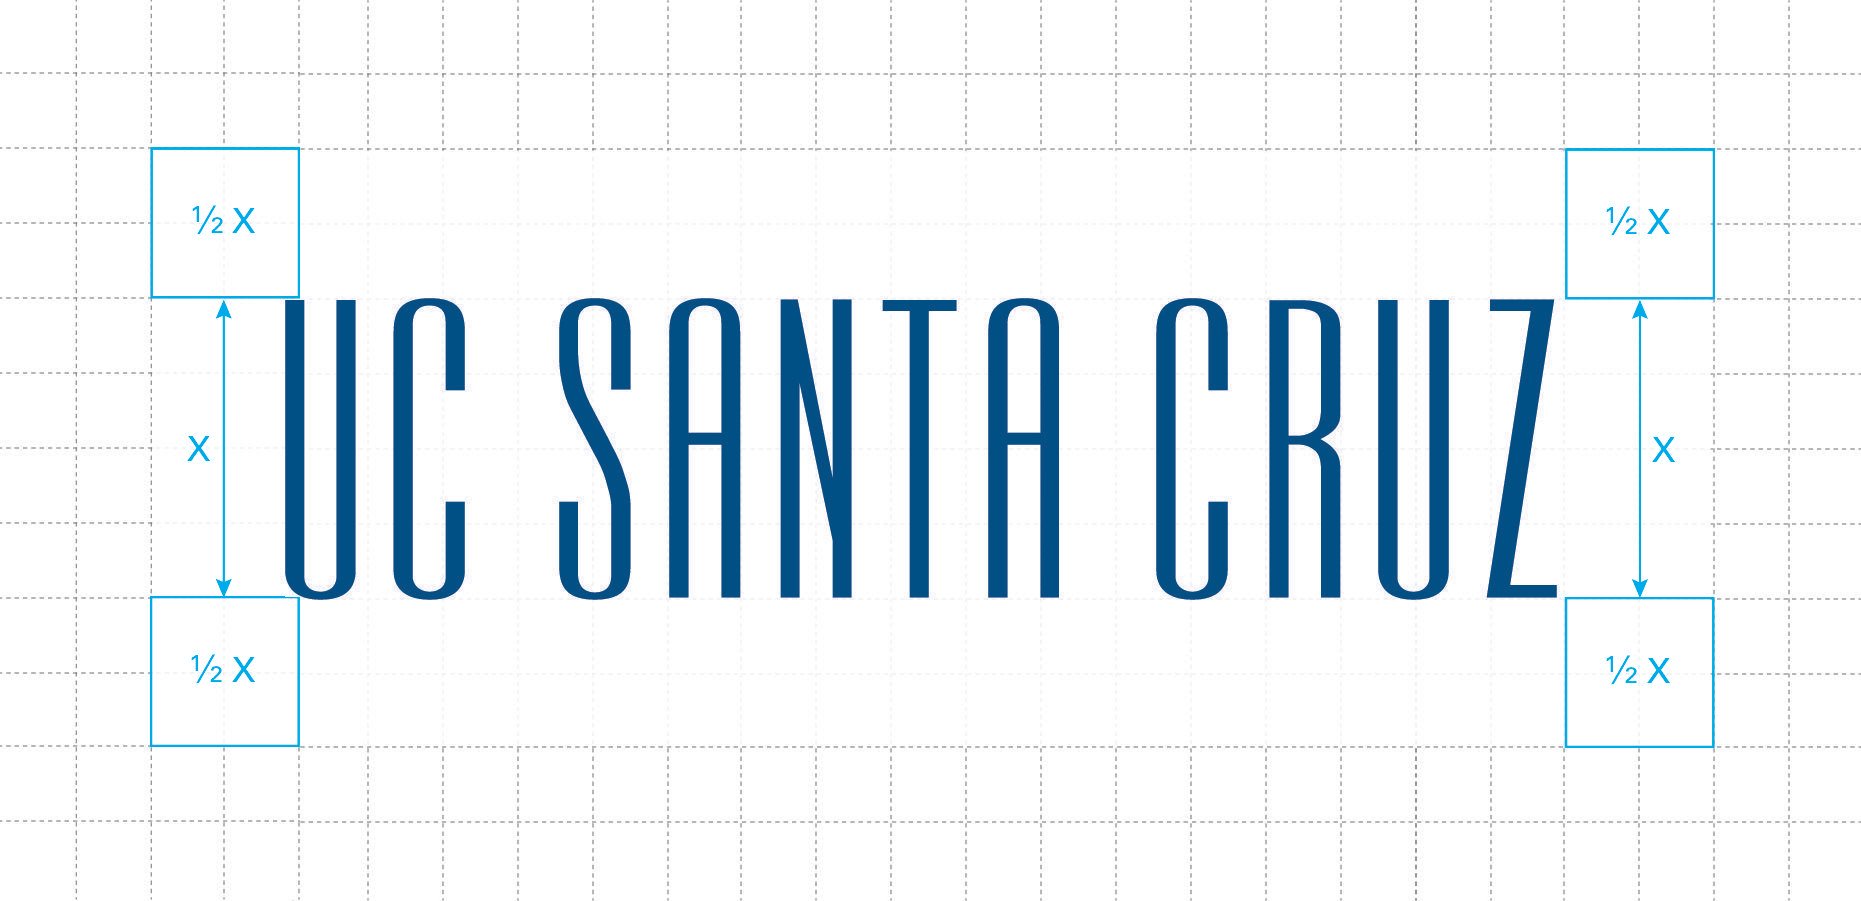 UCSC Logo - Logo Usage